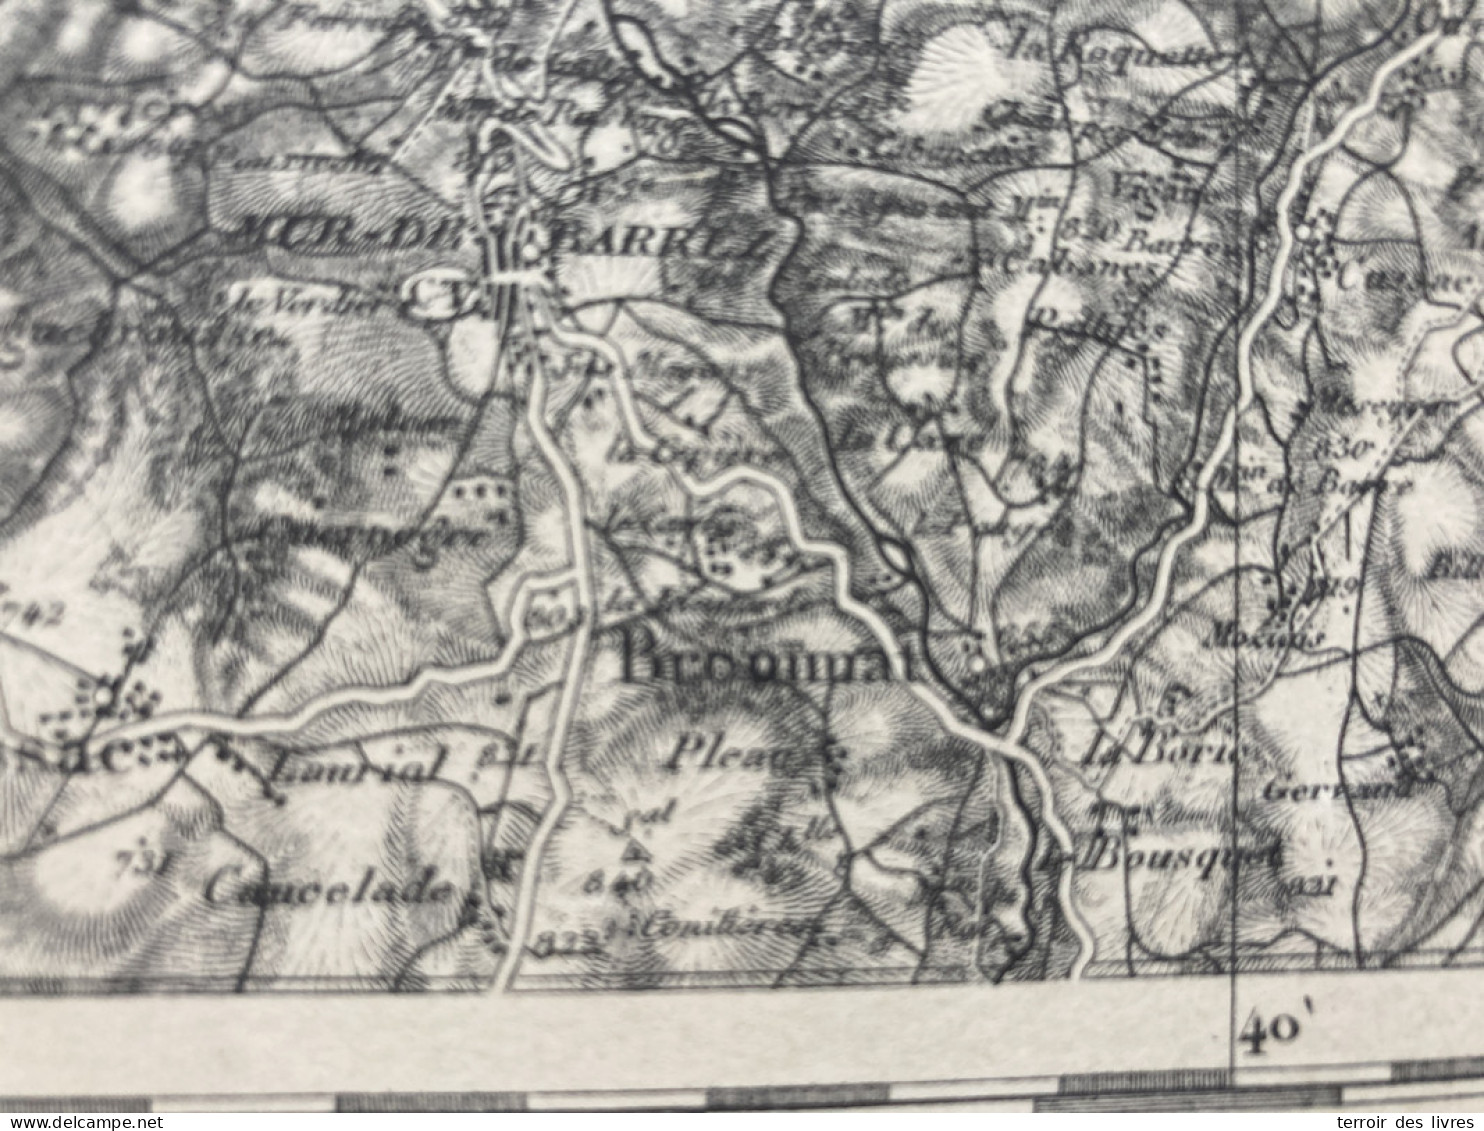 Carte état Major AURILLAC S.E. 1892 35x54cm VEZAC CARLAT YOLET GIOU-DE-MAMOU ST-ETIENNE-DE-CARLAT LABROUSSE ARPAJON-SUR- - Landkarten